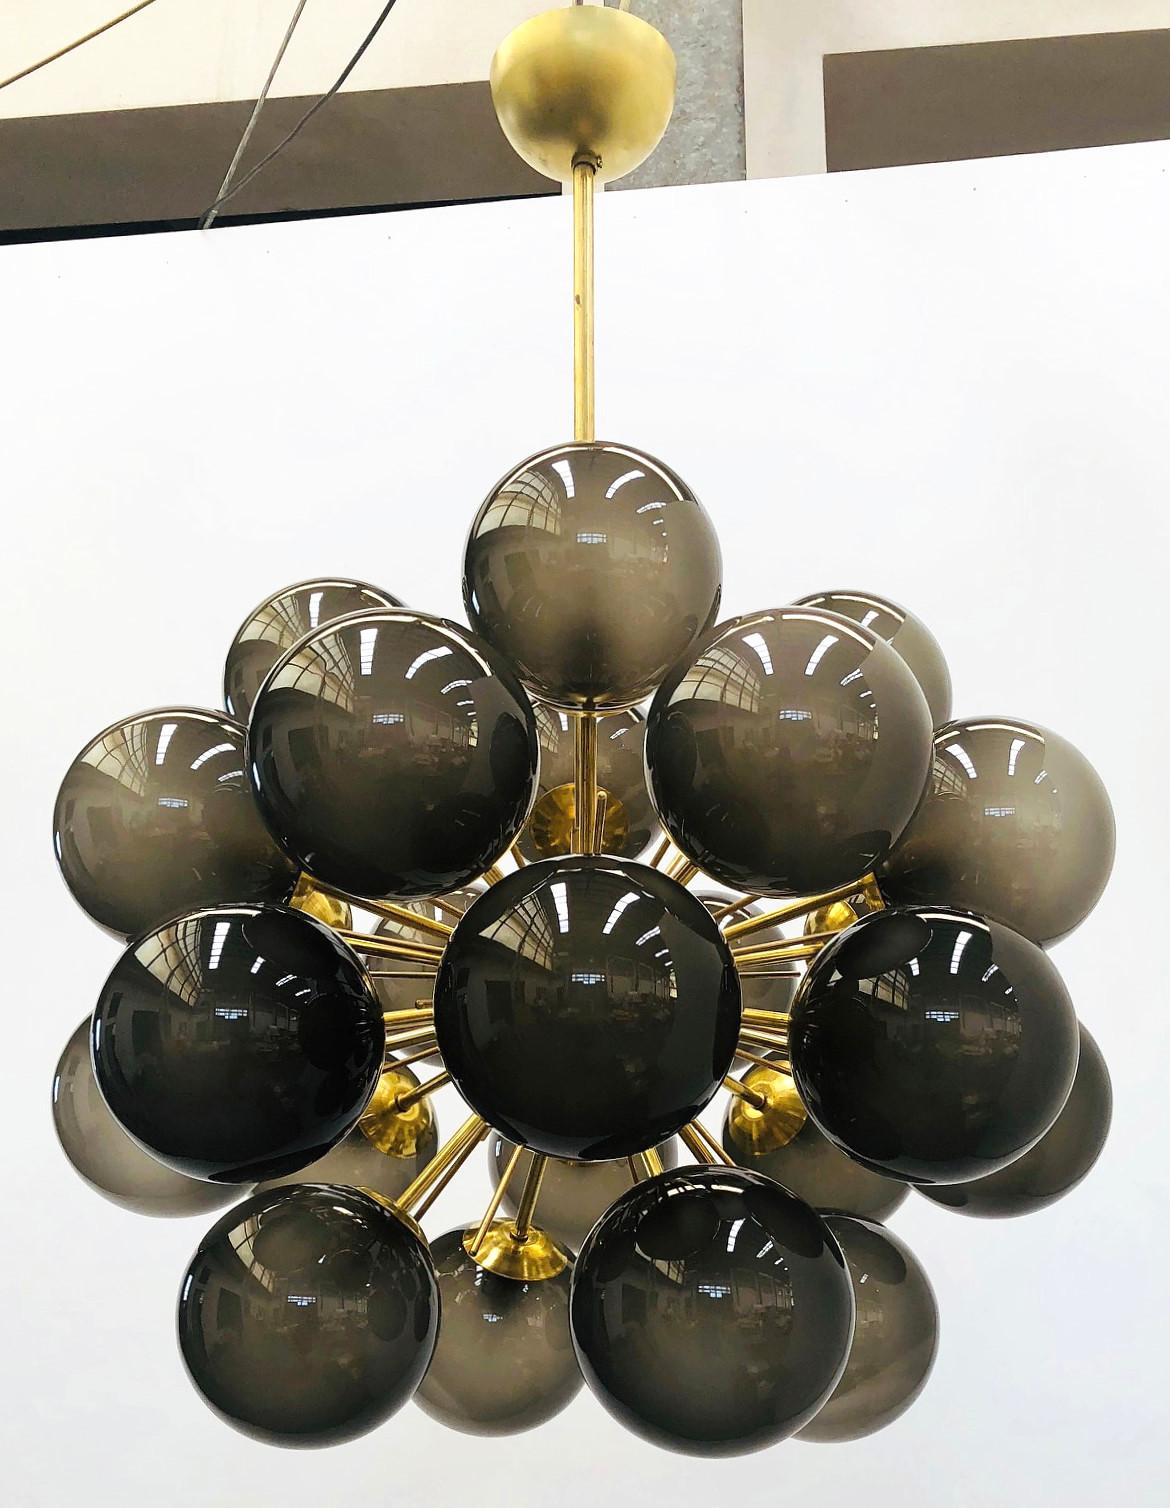 Lustre Sputnik italien avec 24 globes en verre de Murano montés sur une monture en laiton / Design by Fabio Bergomi for Fabio Ltd / Made in Italy
24 lampes / type E12 ou E14 / max 40W chacune
Diamètre : 28 pouces / Hauteur : 39 pouces avec tringle